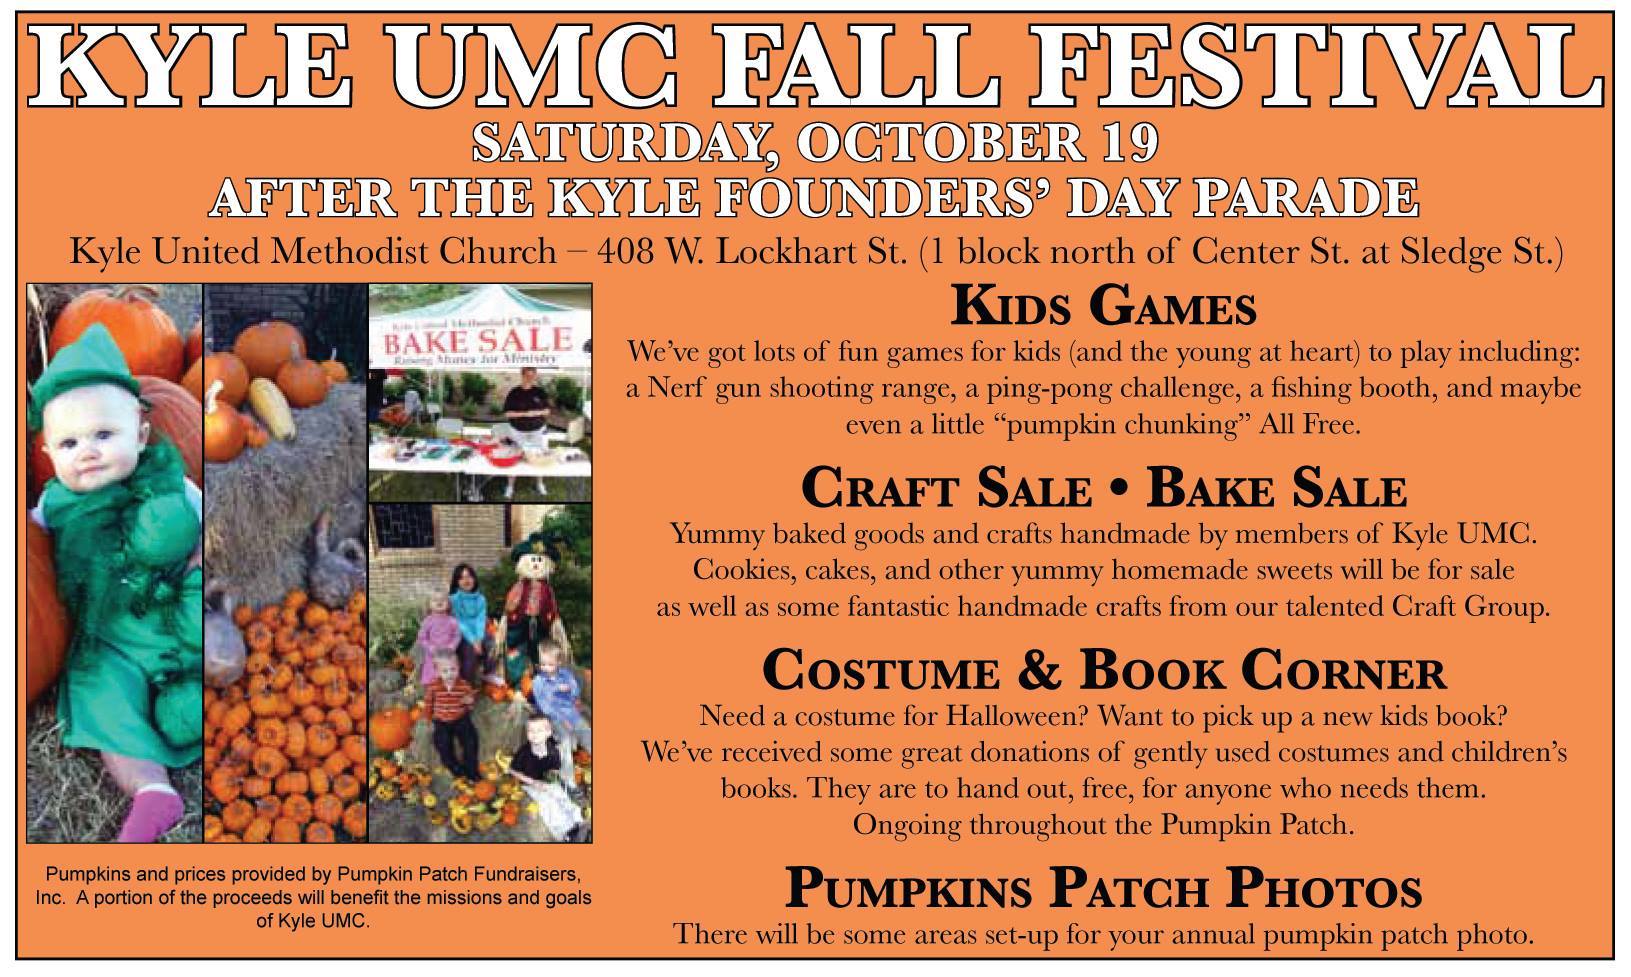 Kyle UMC Fall Festival 2013